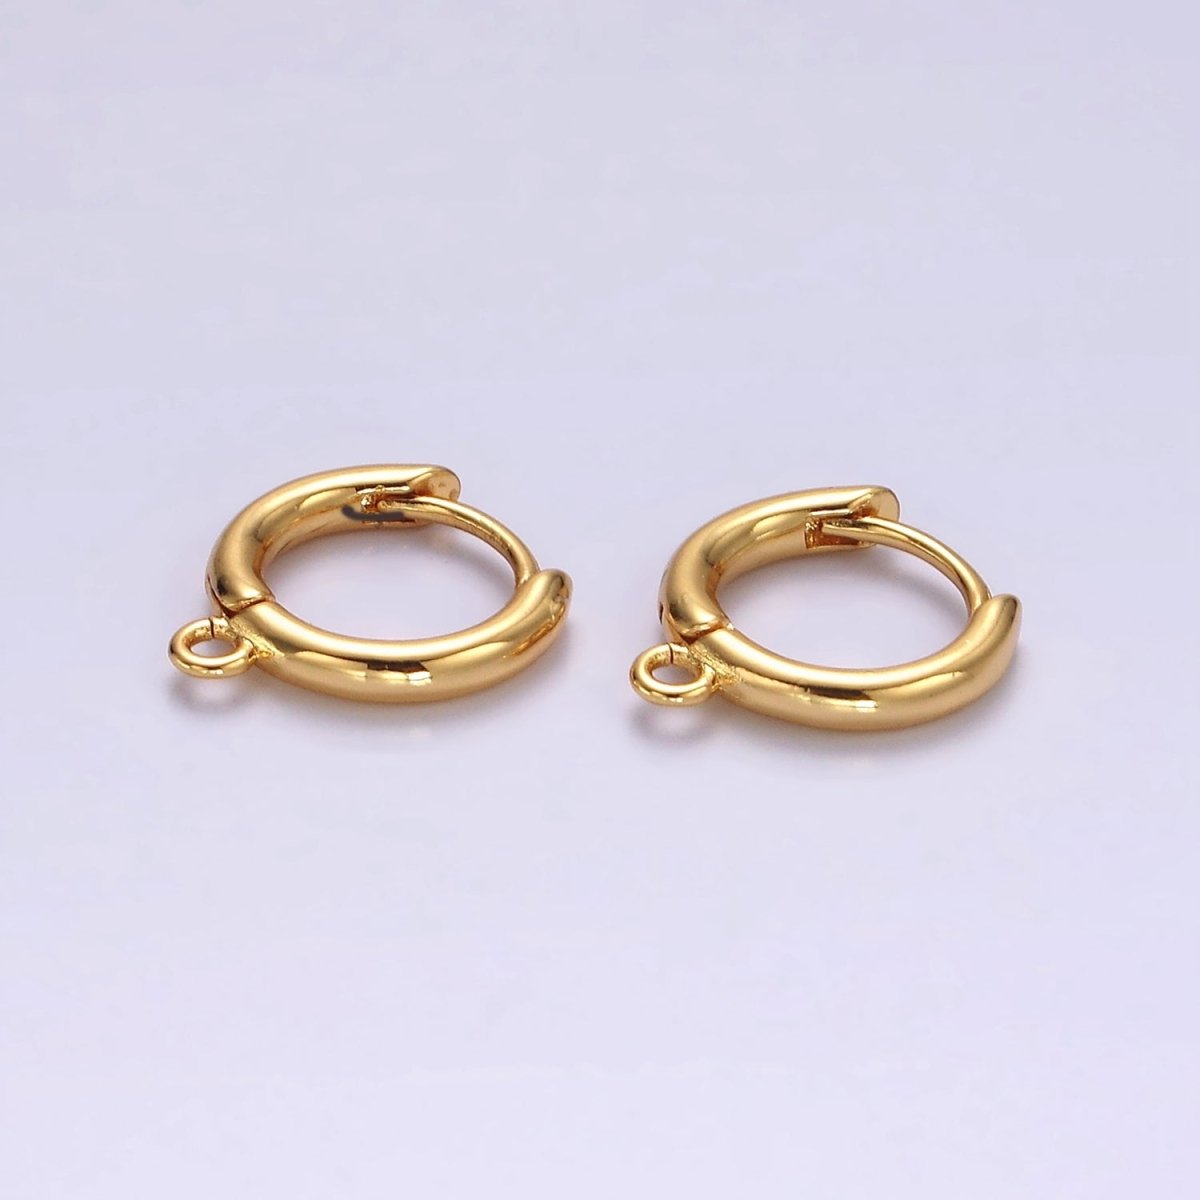 16K Gold Filled 11.8mm Minimalist Huggie Open Loop Earrings Findings Supply | Z564 - DLUXCA